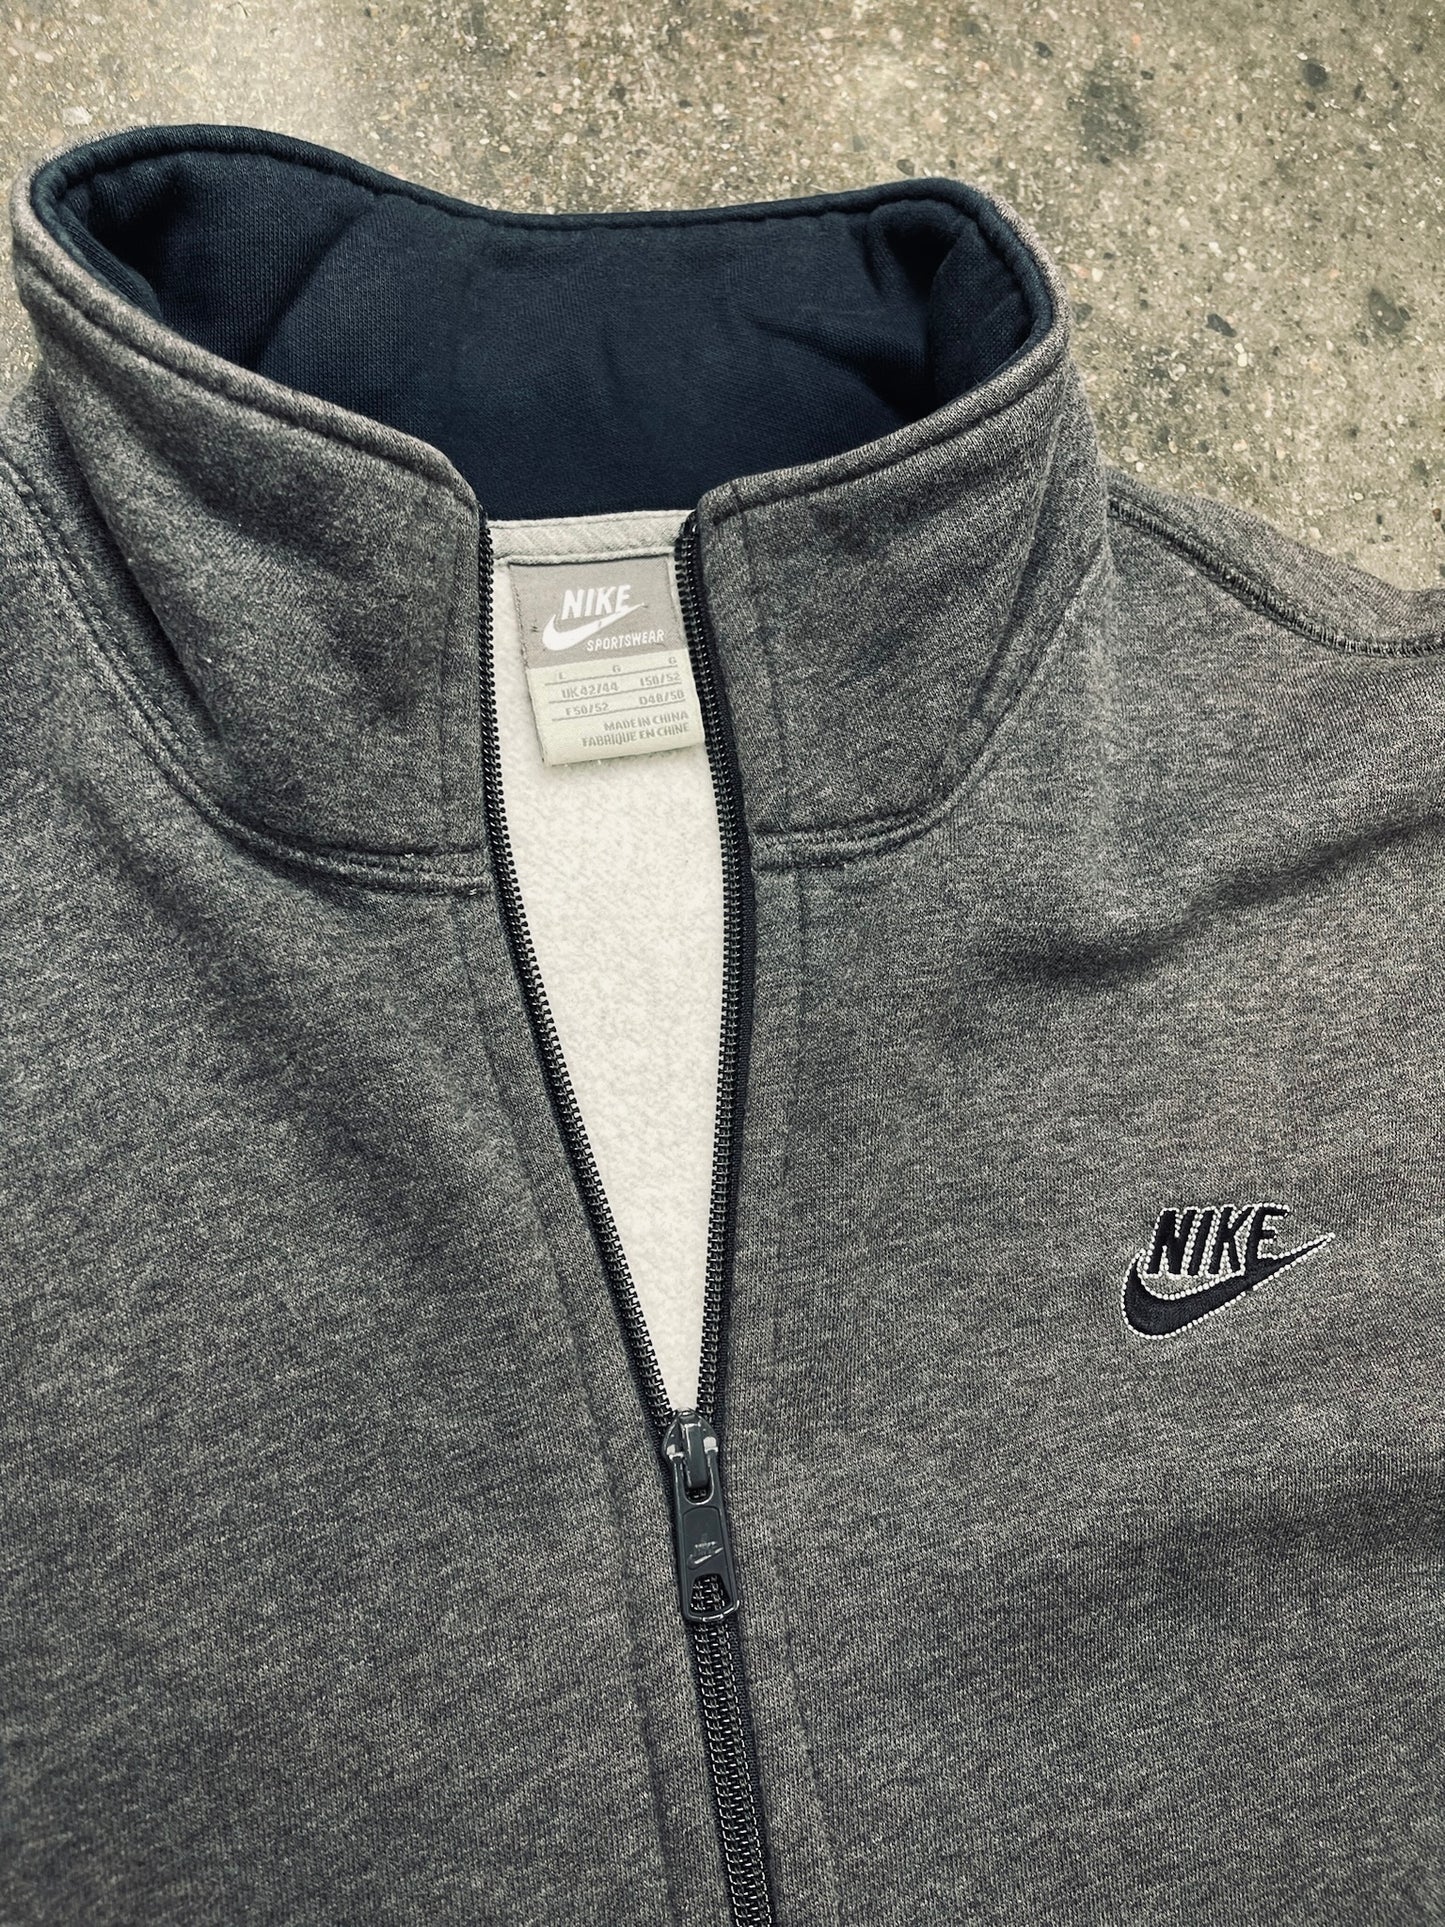 Nike Sweater Grey Size Large